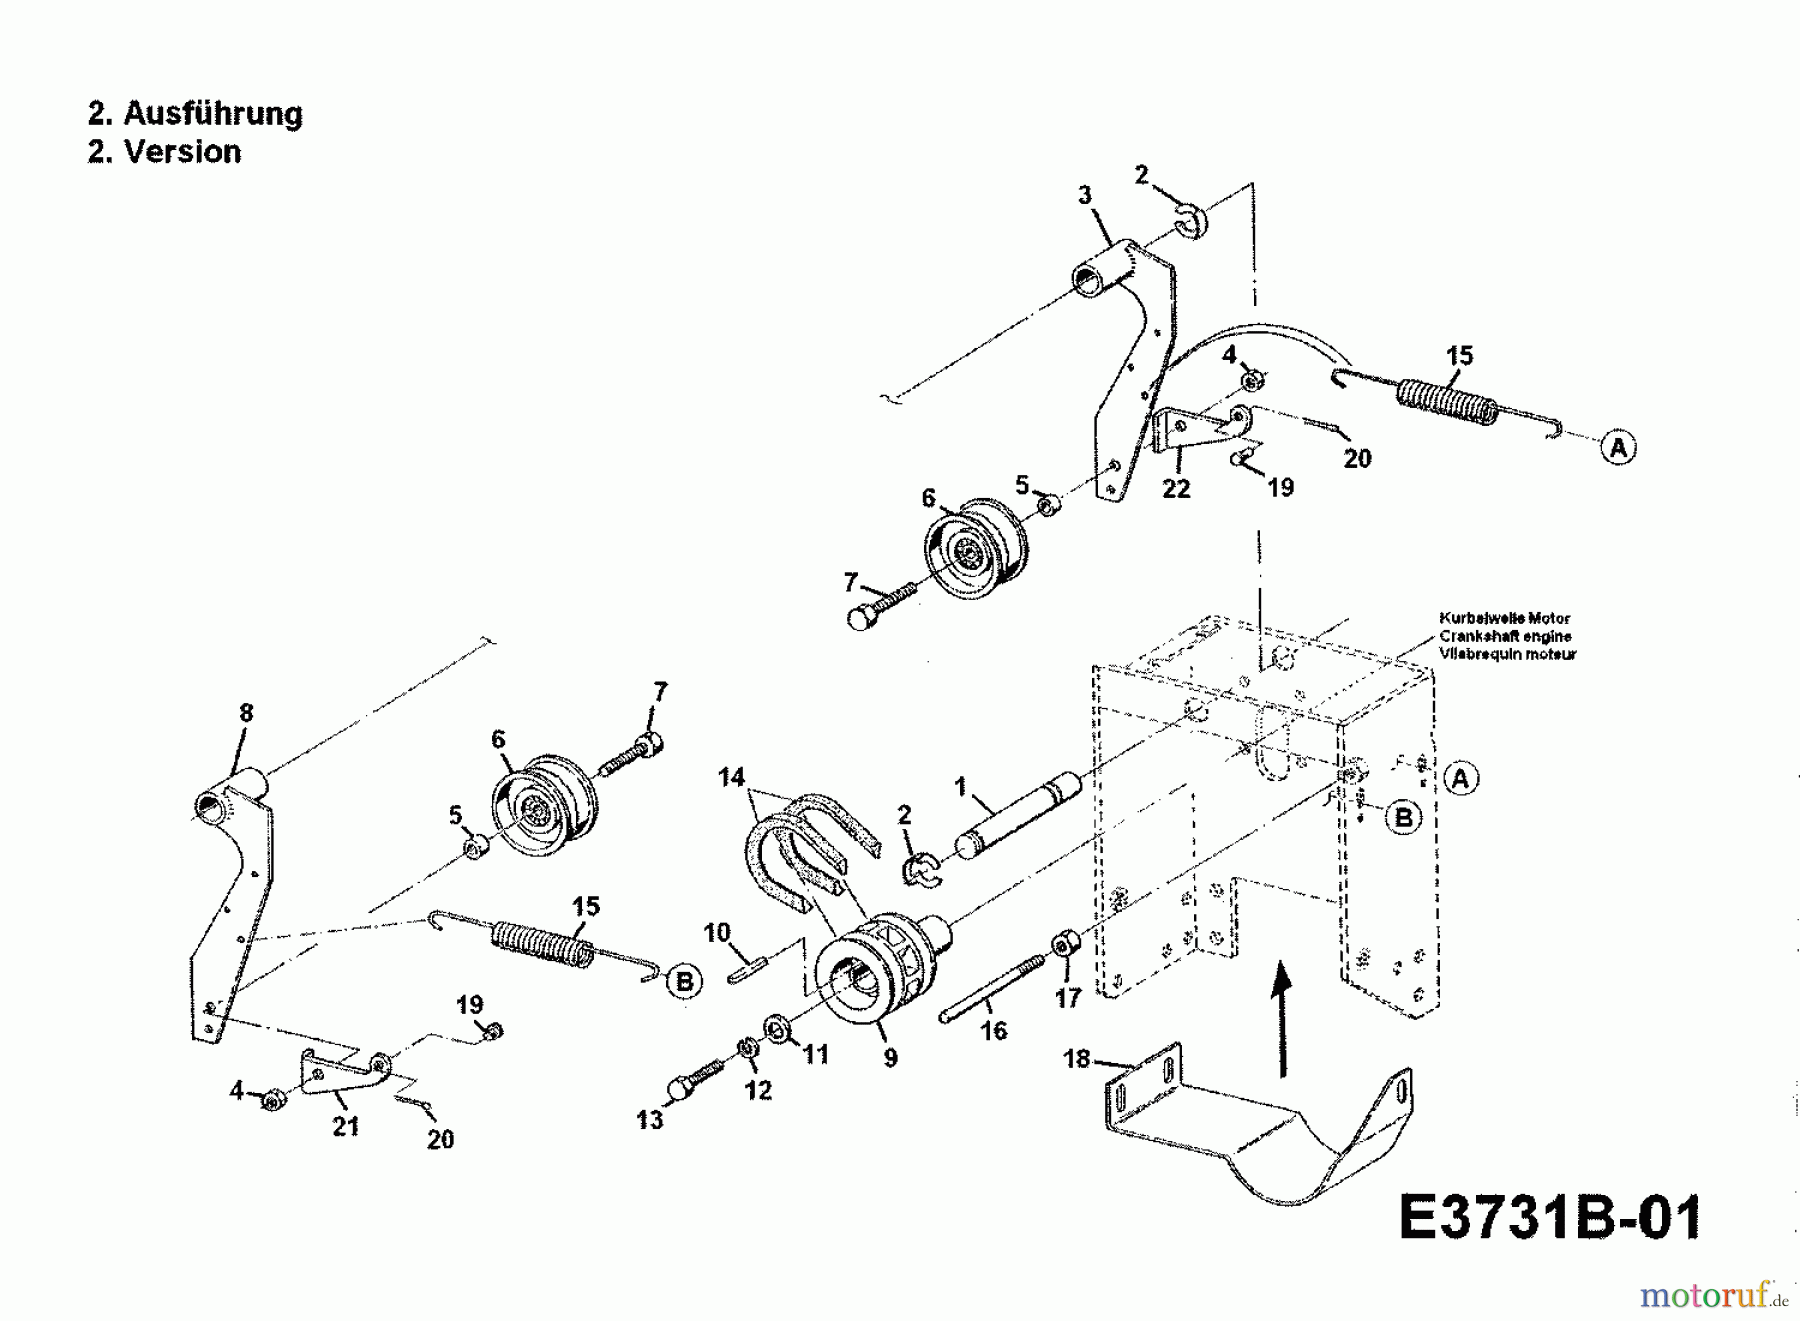  Gutbrod Motoculteur G 650 00026.01  (1988) Entraînement de roulement, Entraînement prise de force